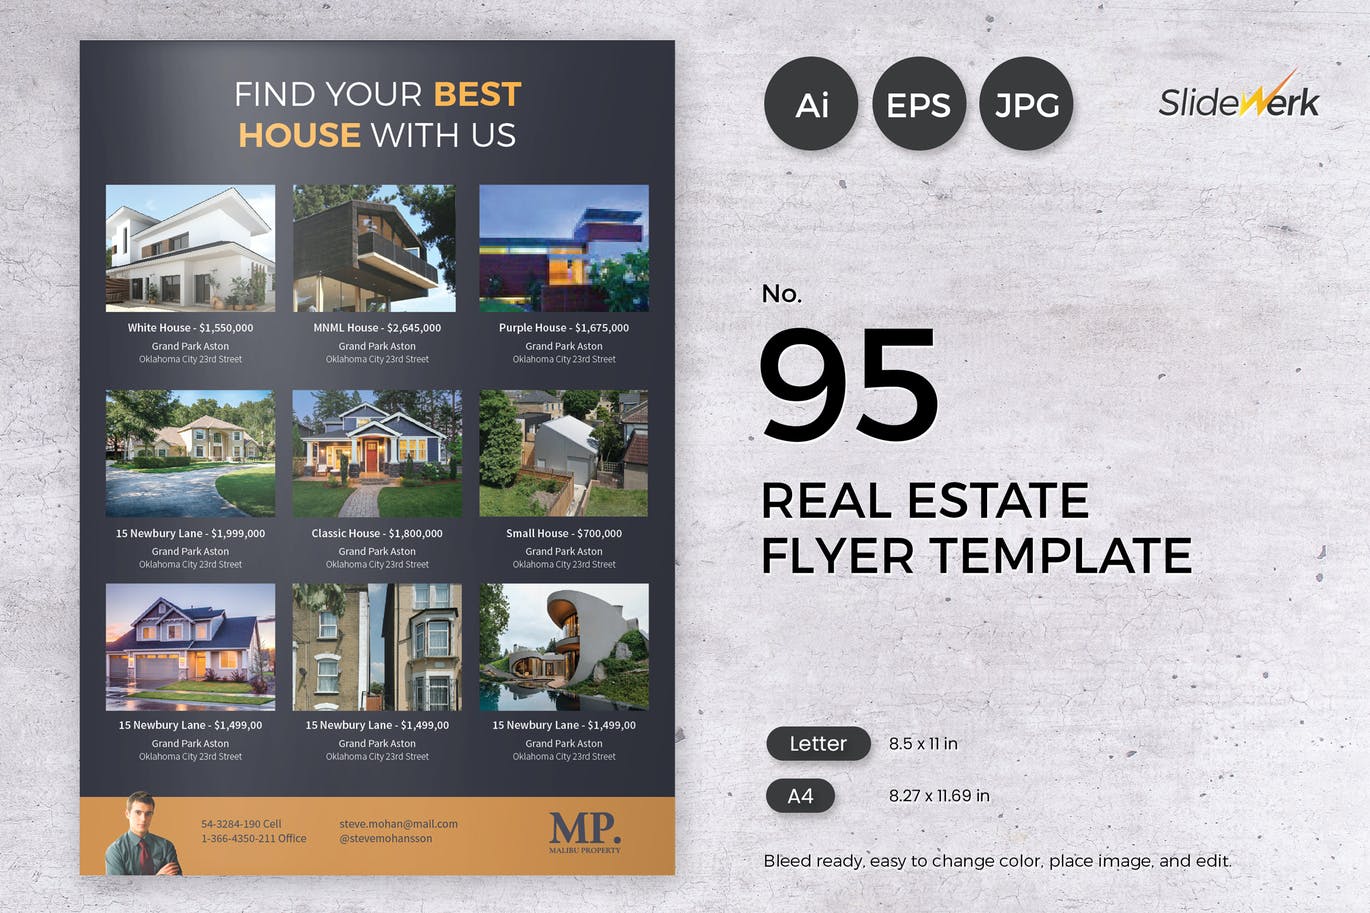 Real Estate Flyer Template 95 - Slidewerk